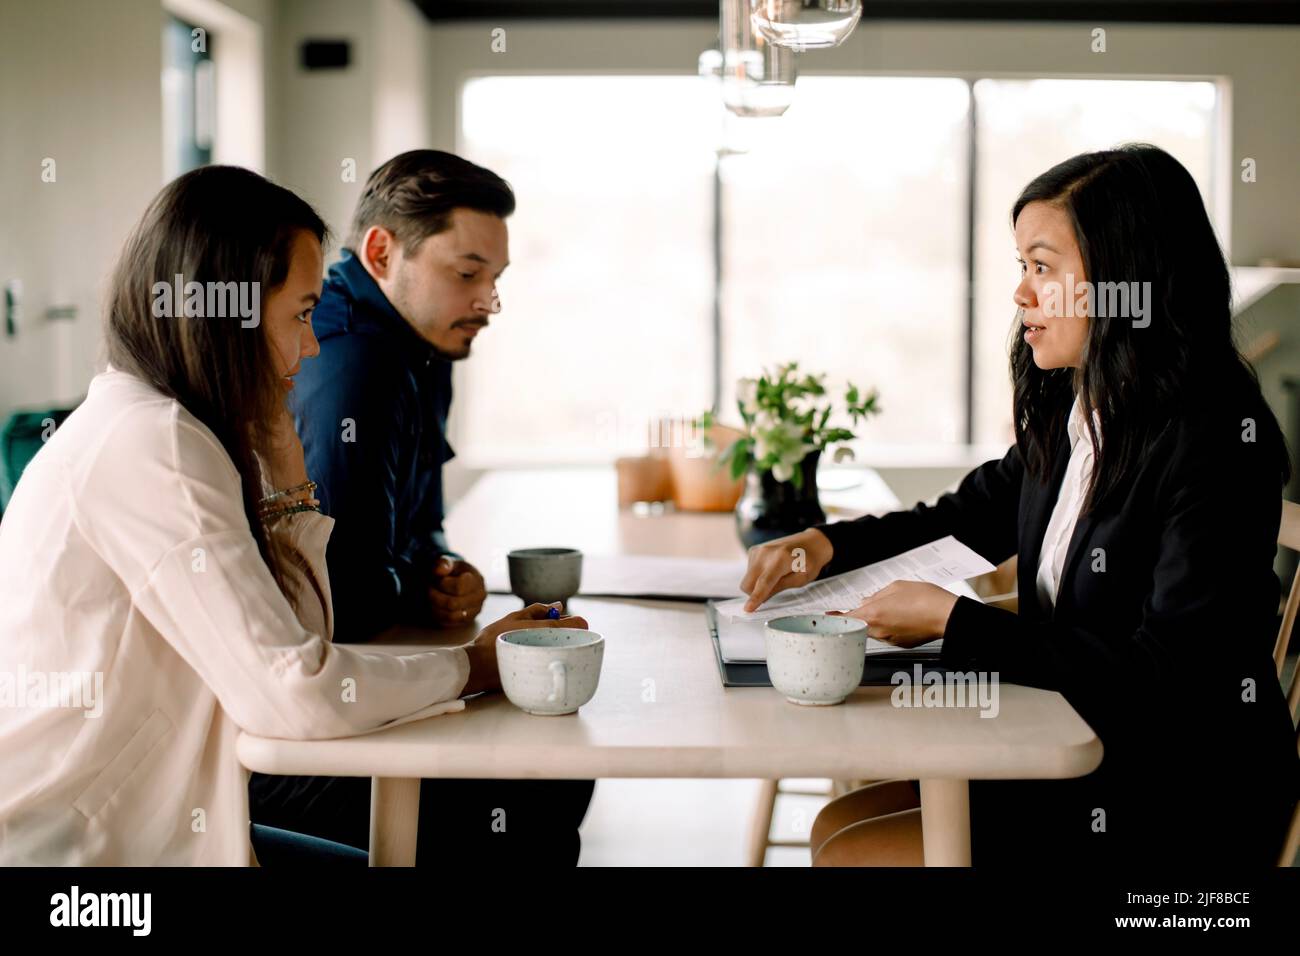 Les clients discutent de documents immobiliers avec une vendeuse à table dans une nouvelle maison Banque D'Images